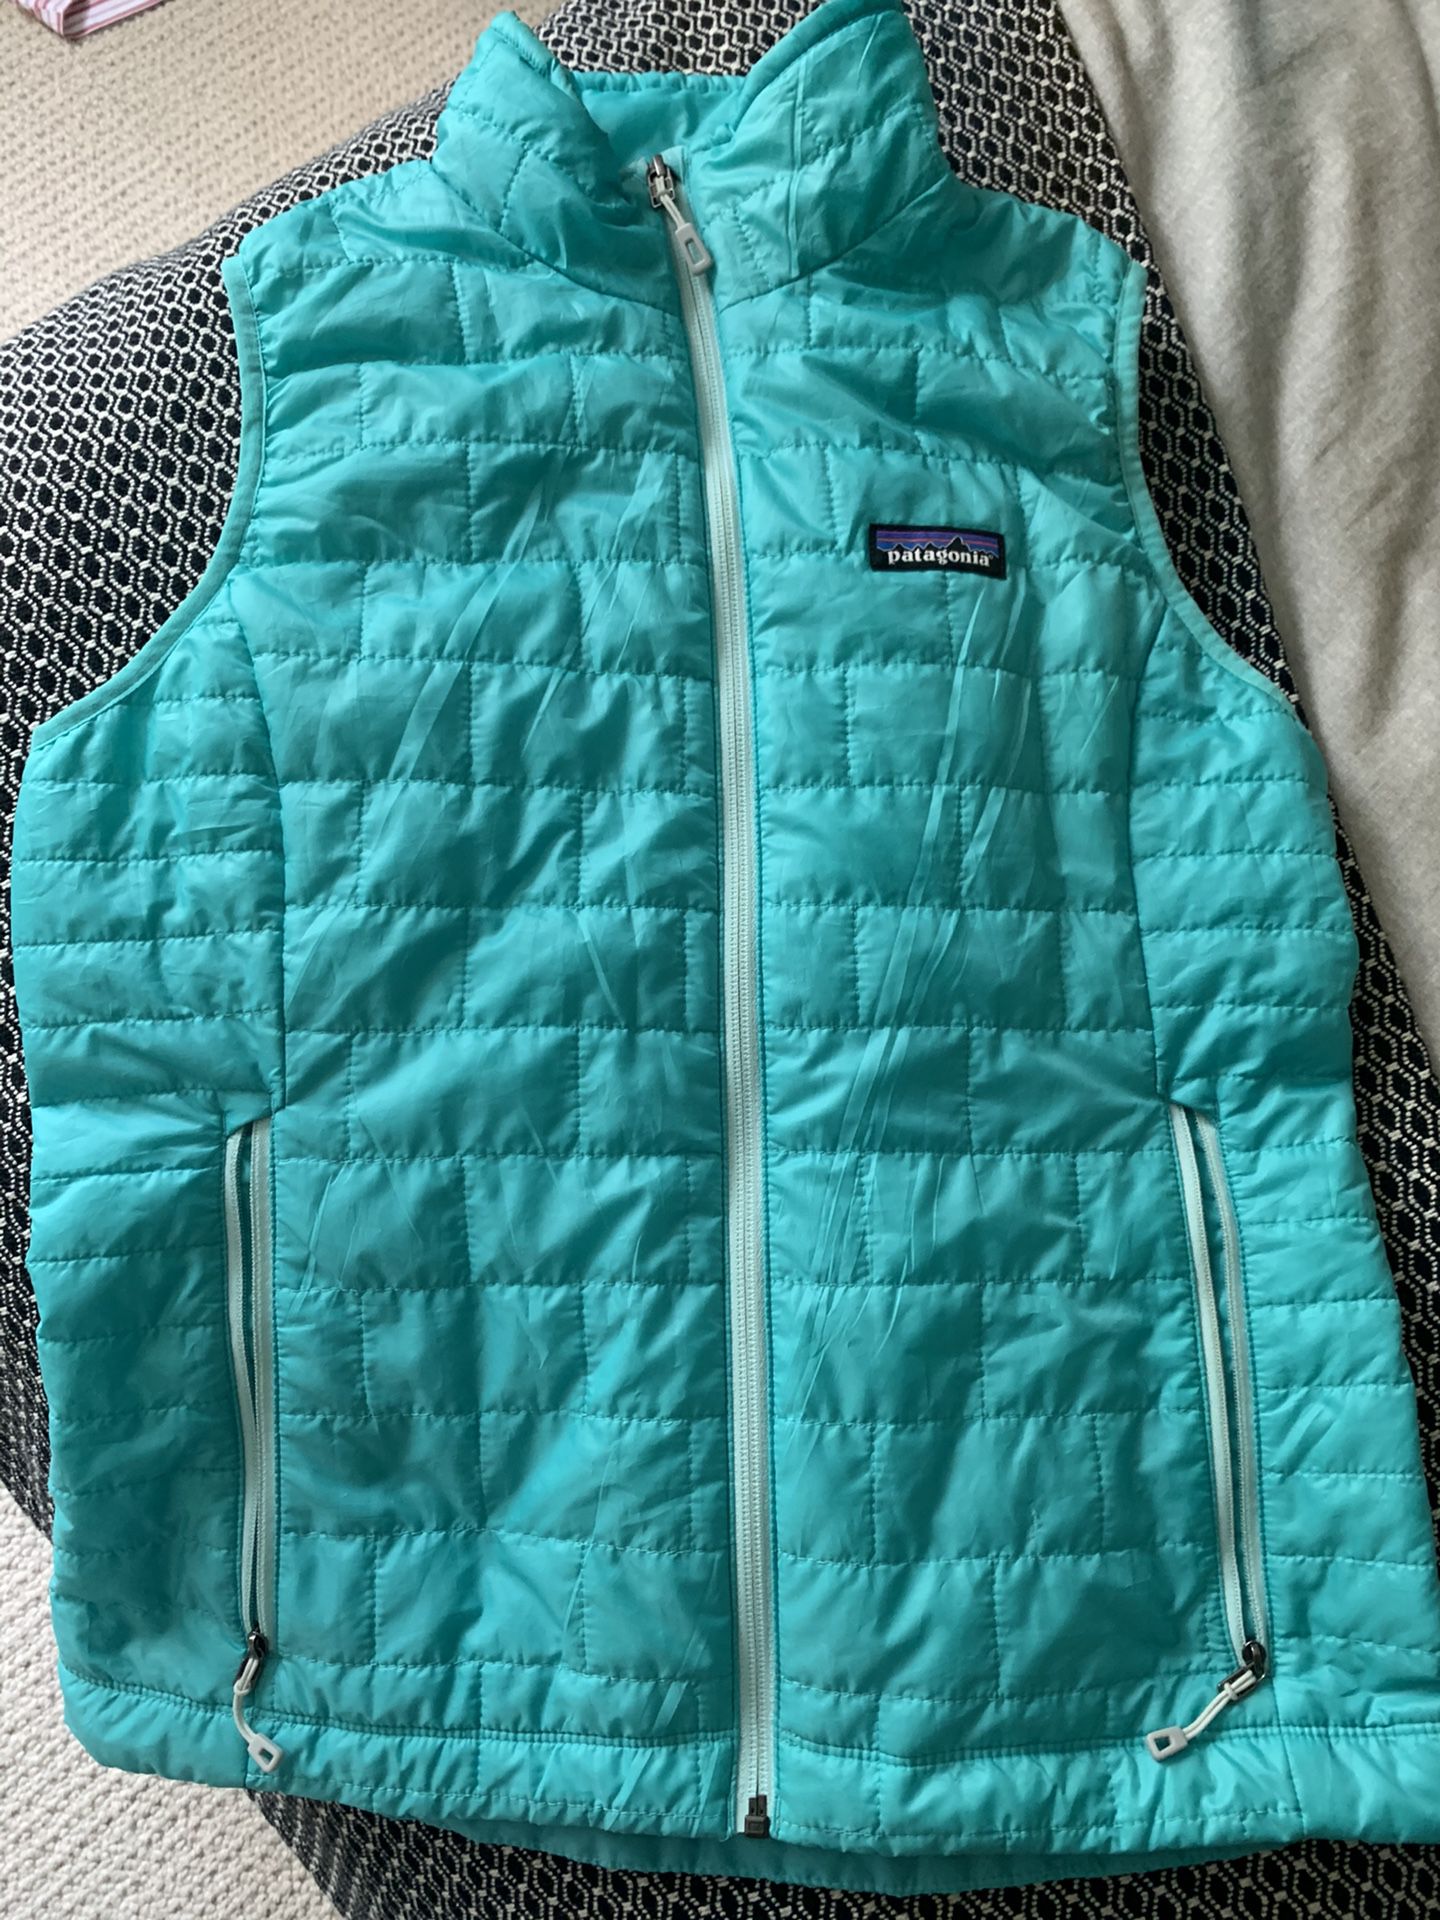 Patagonia Nano Puff Vest - size Small (Women’s)